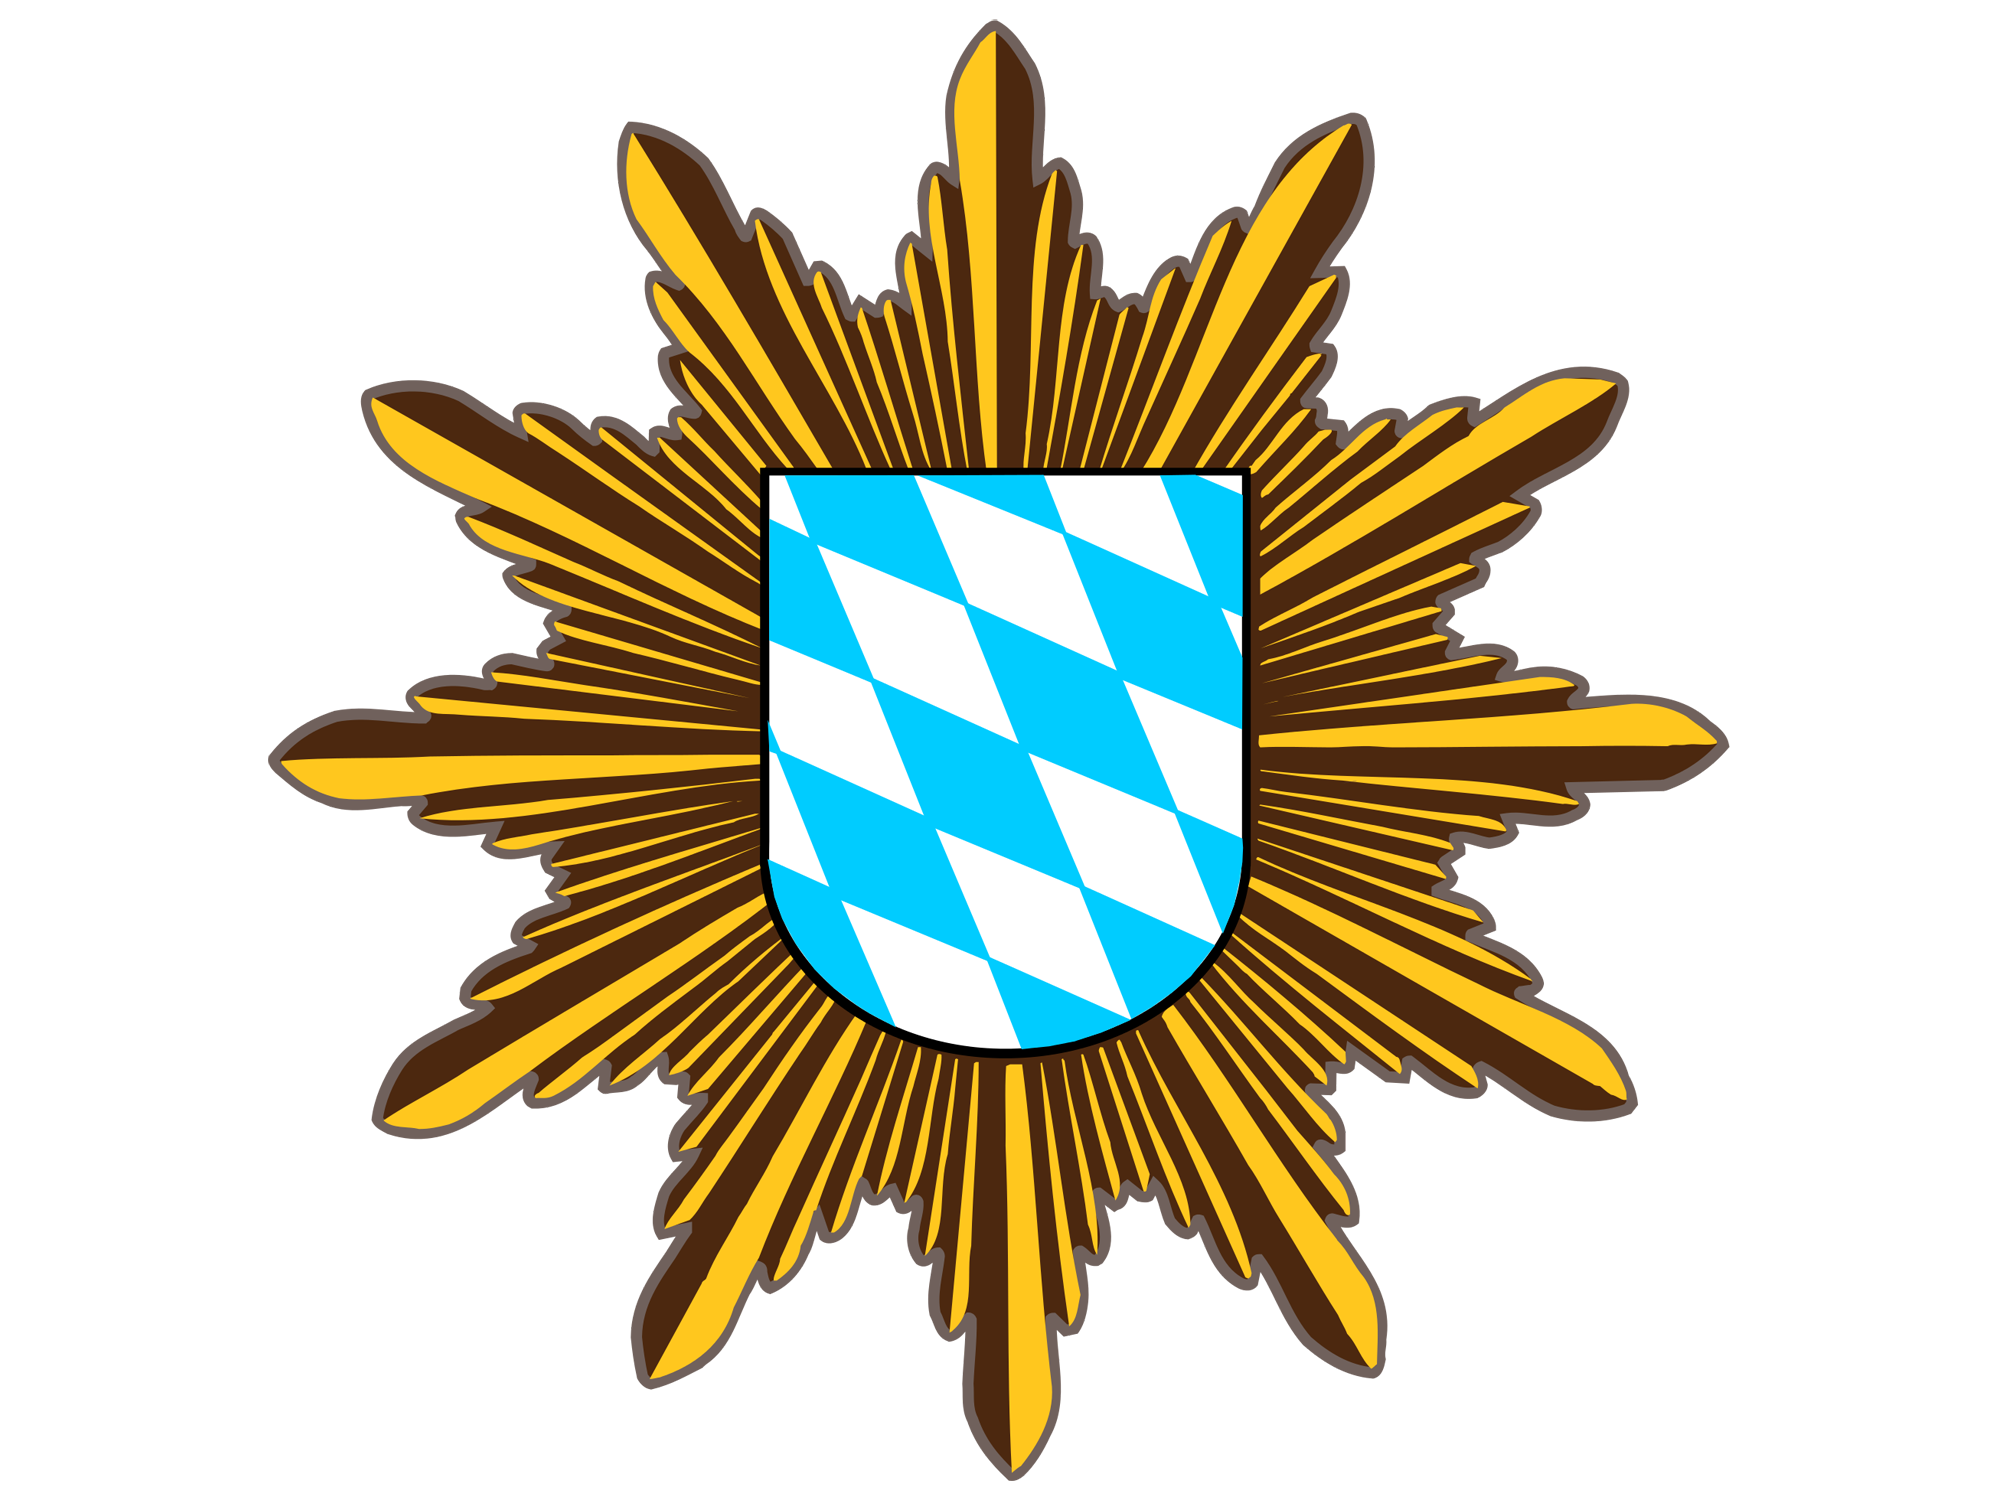 Polizeipräsidium Mittelfranken